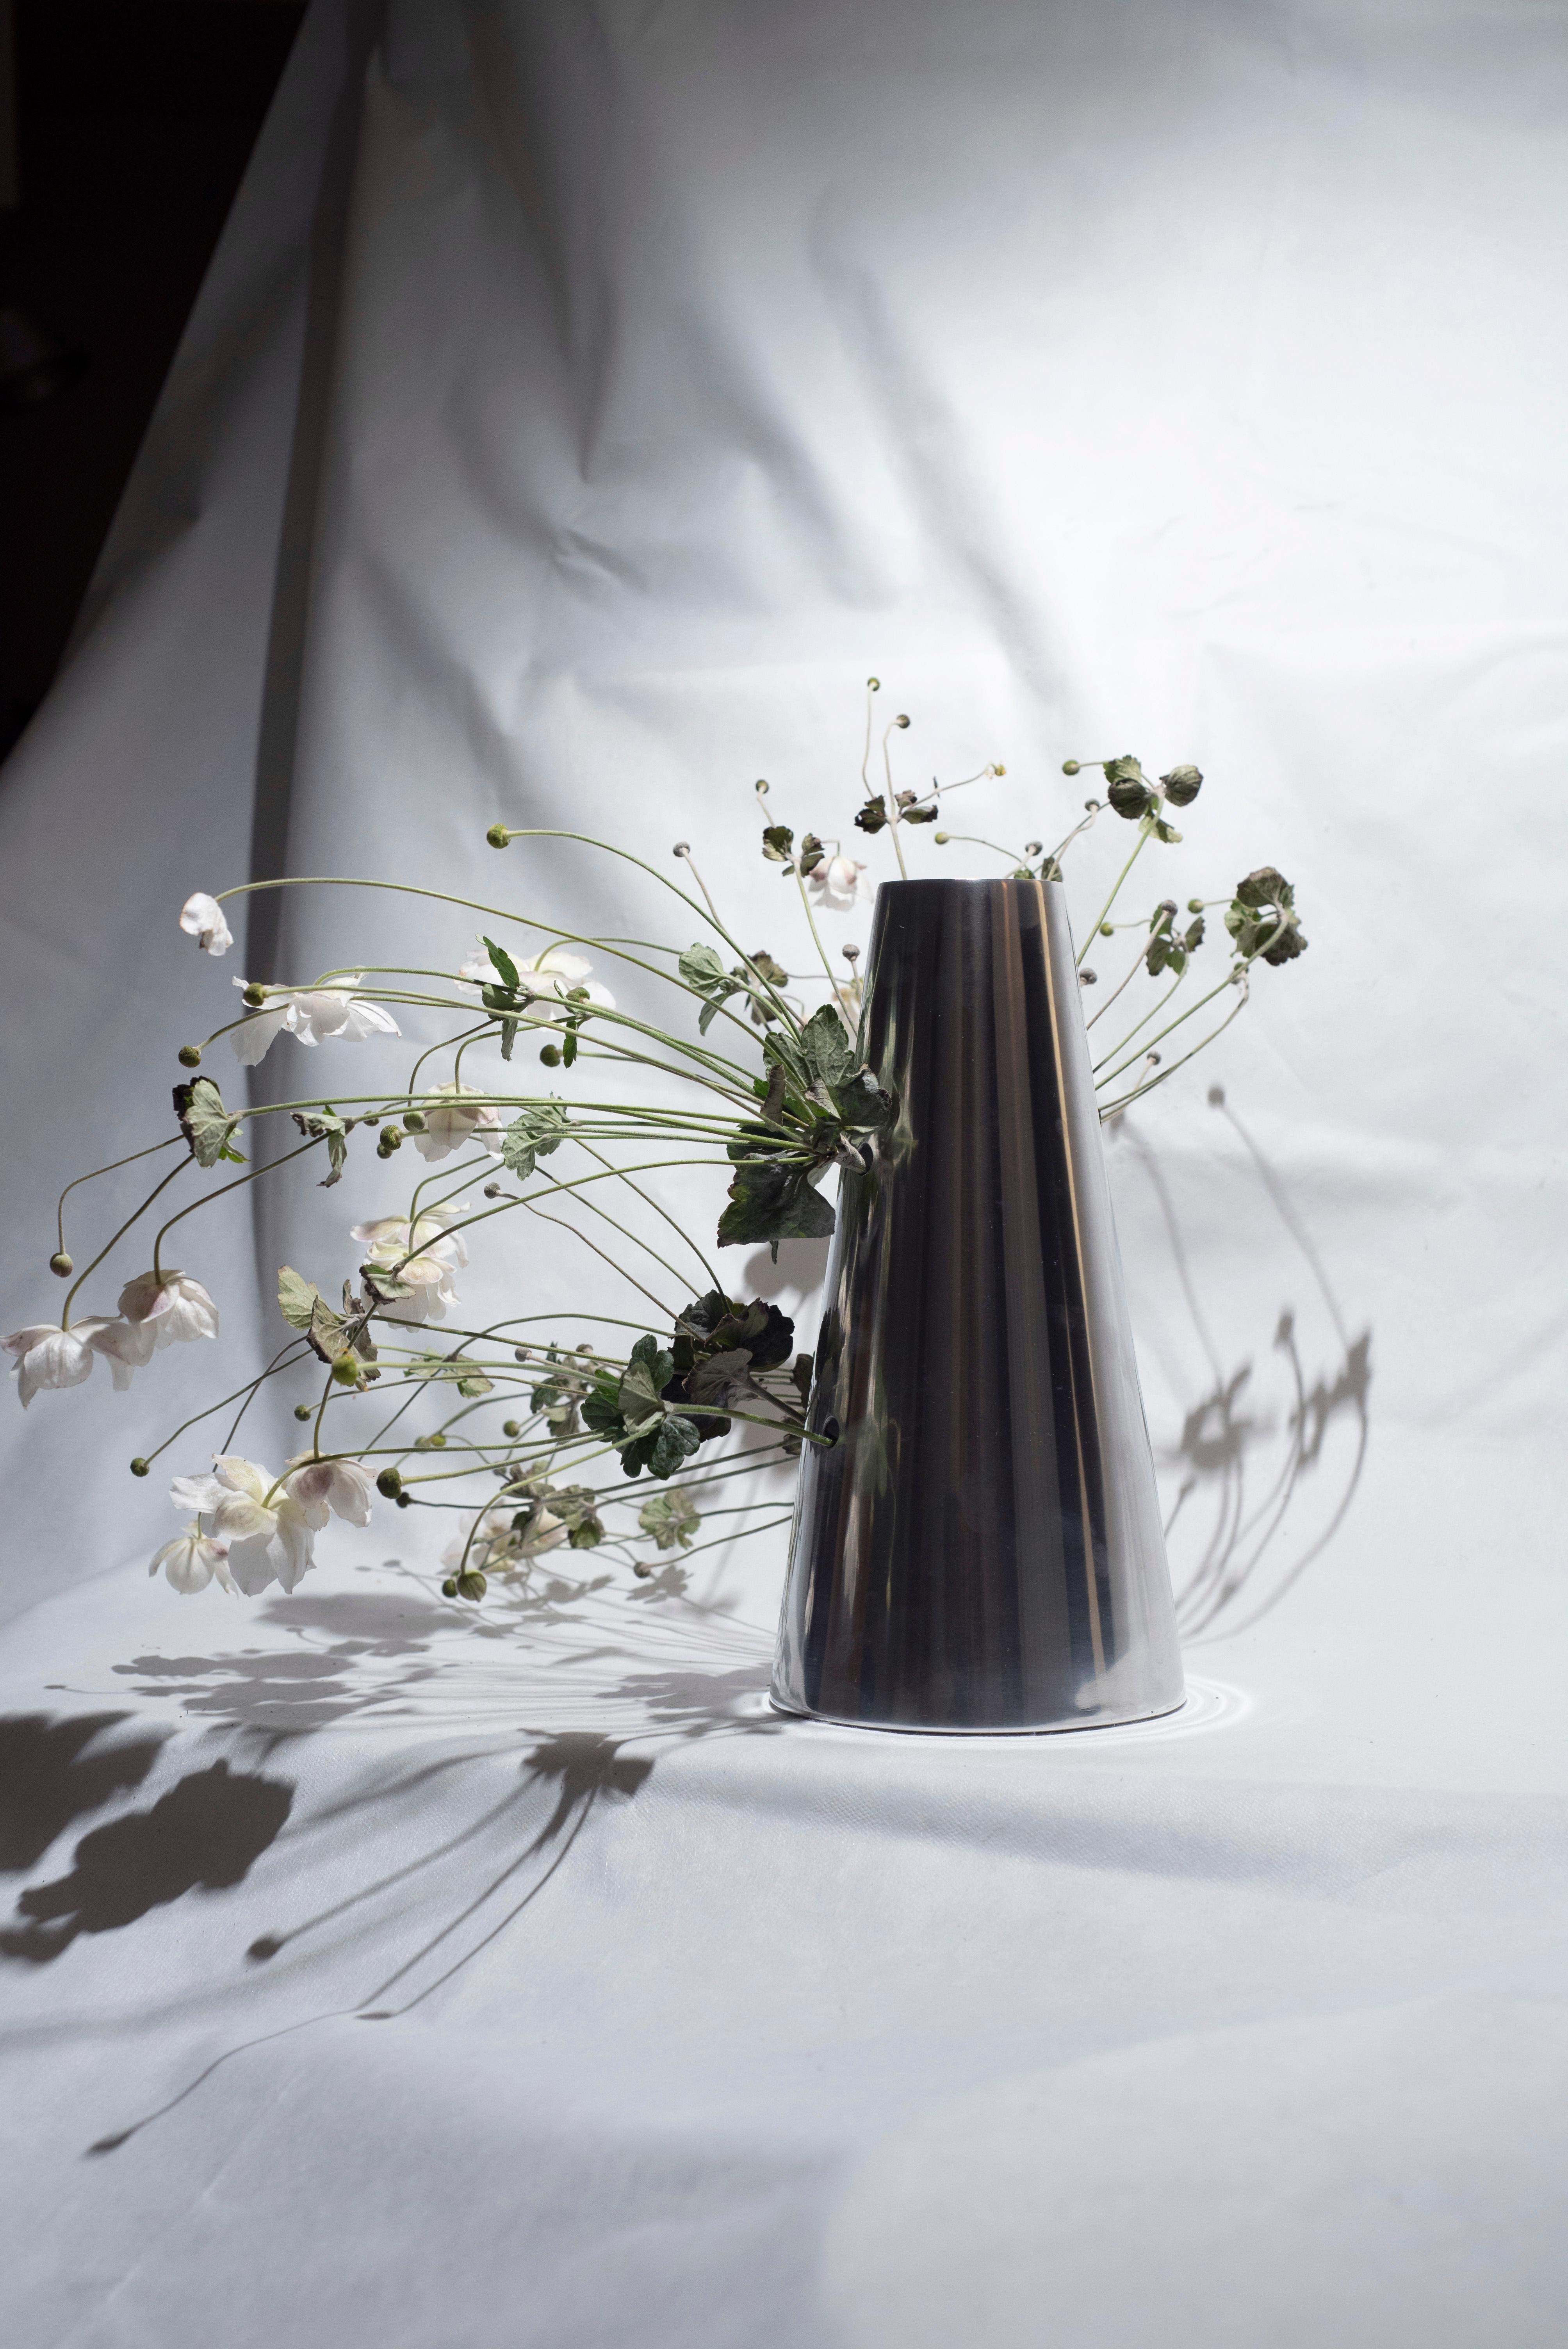 Le C001 est un vase en aluminium poli avec des perforations latérales qui servent d'ouvertures alternatives pour les fleurs qu'il est censé contenir. Inspirée de l'art japonais de l'Ikebana et des Almorratxes espagnols, pinasaan est une série de